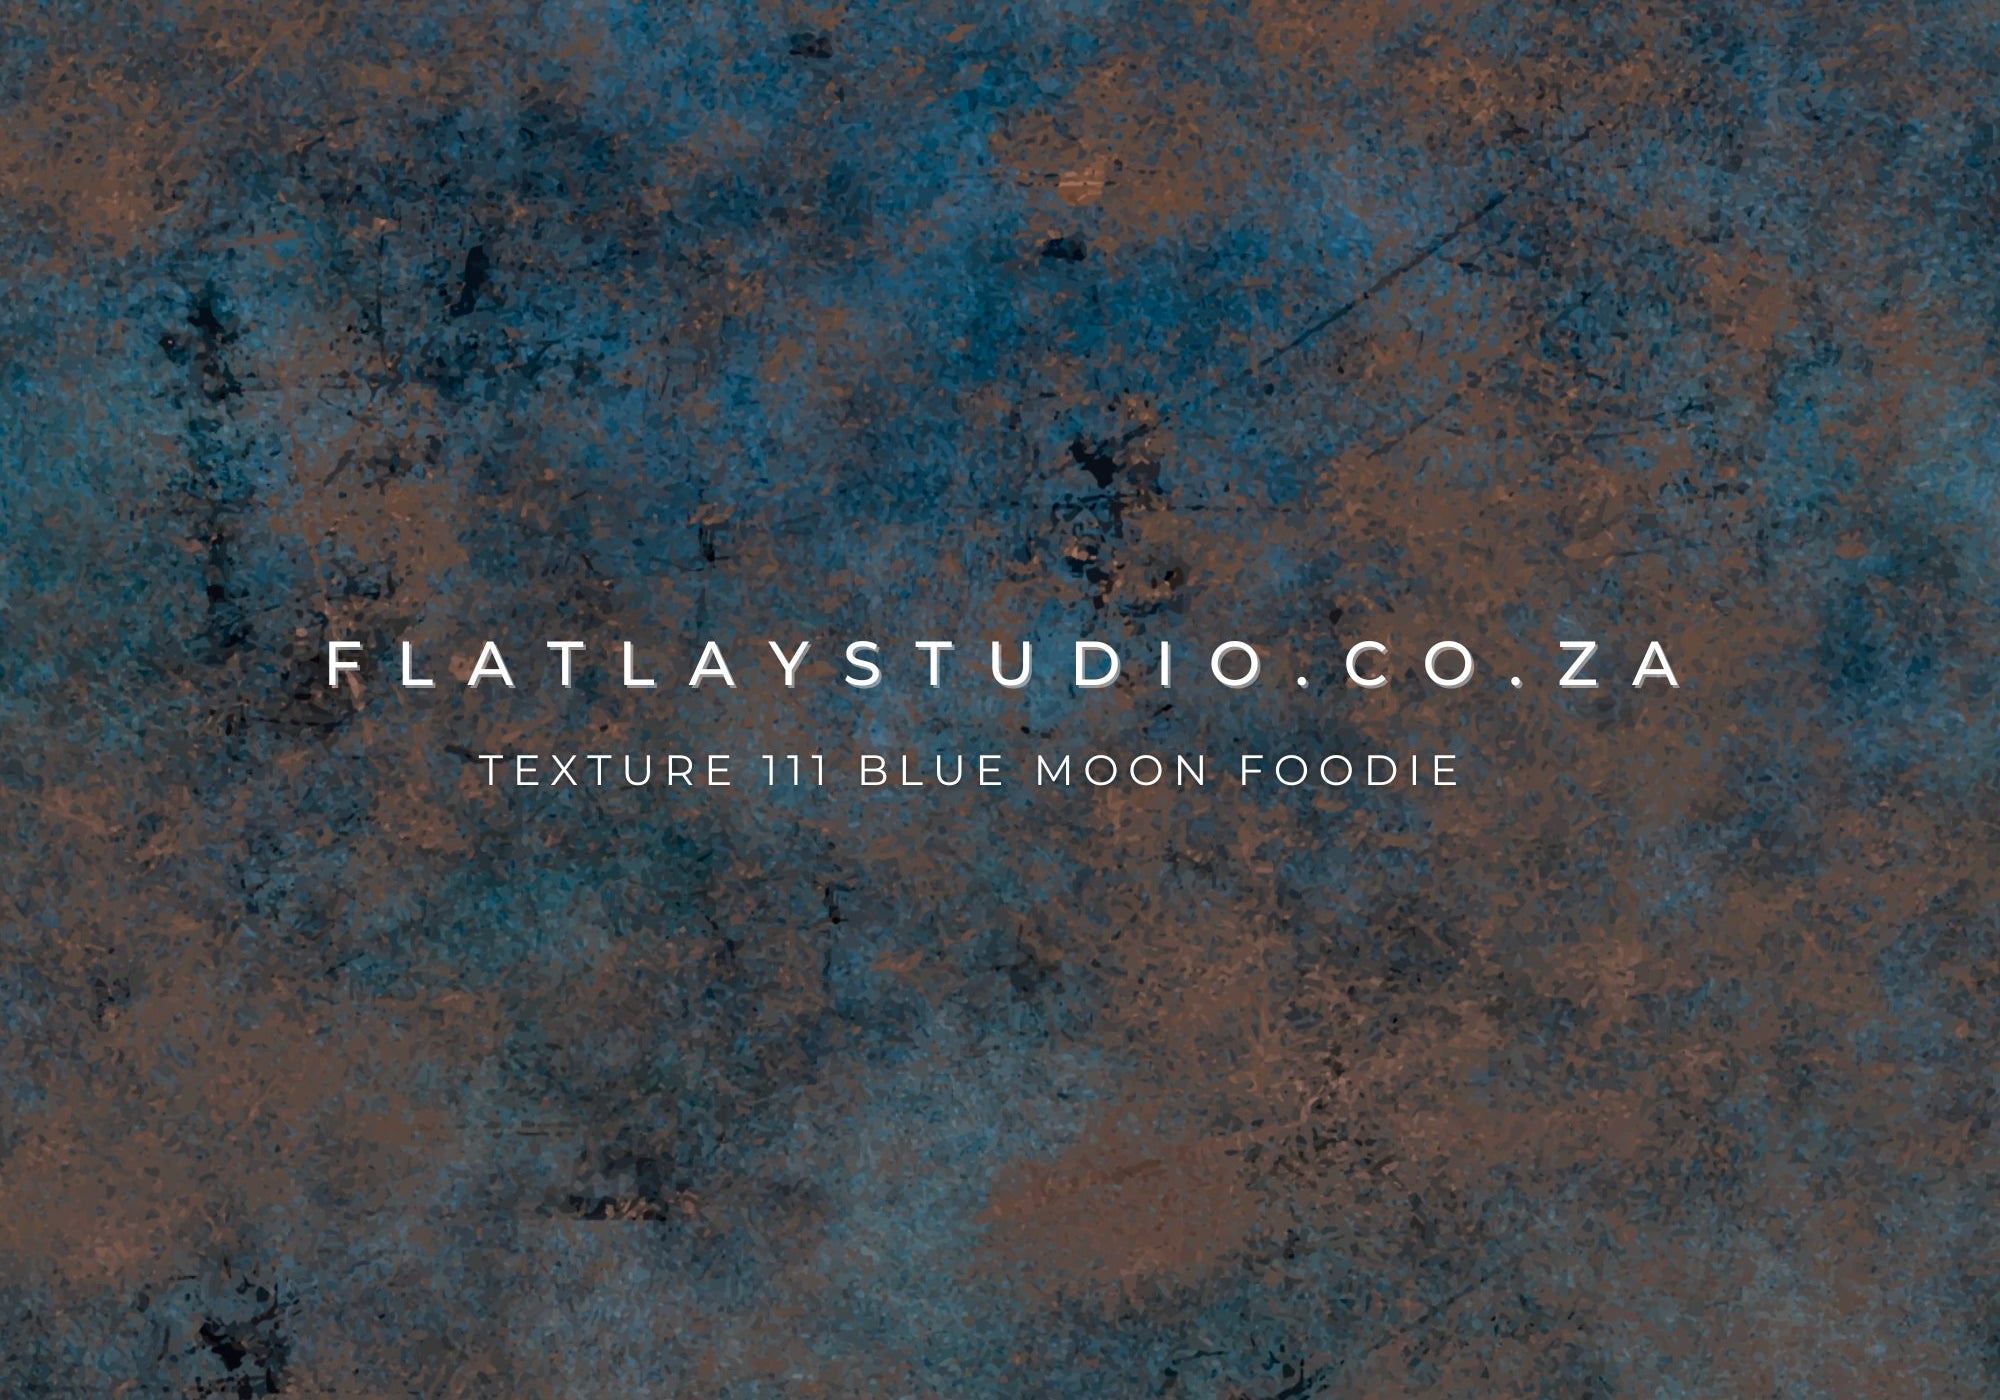 Texture 111 Blue Moon Foodie Flatlay Styling Board Flatlay Studio 